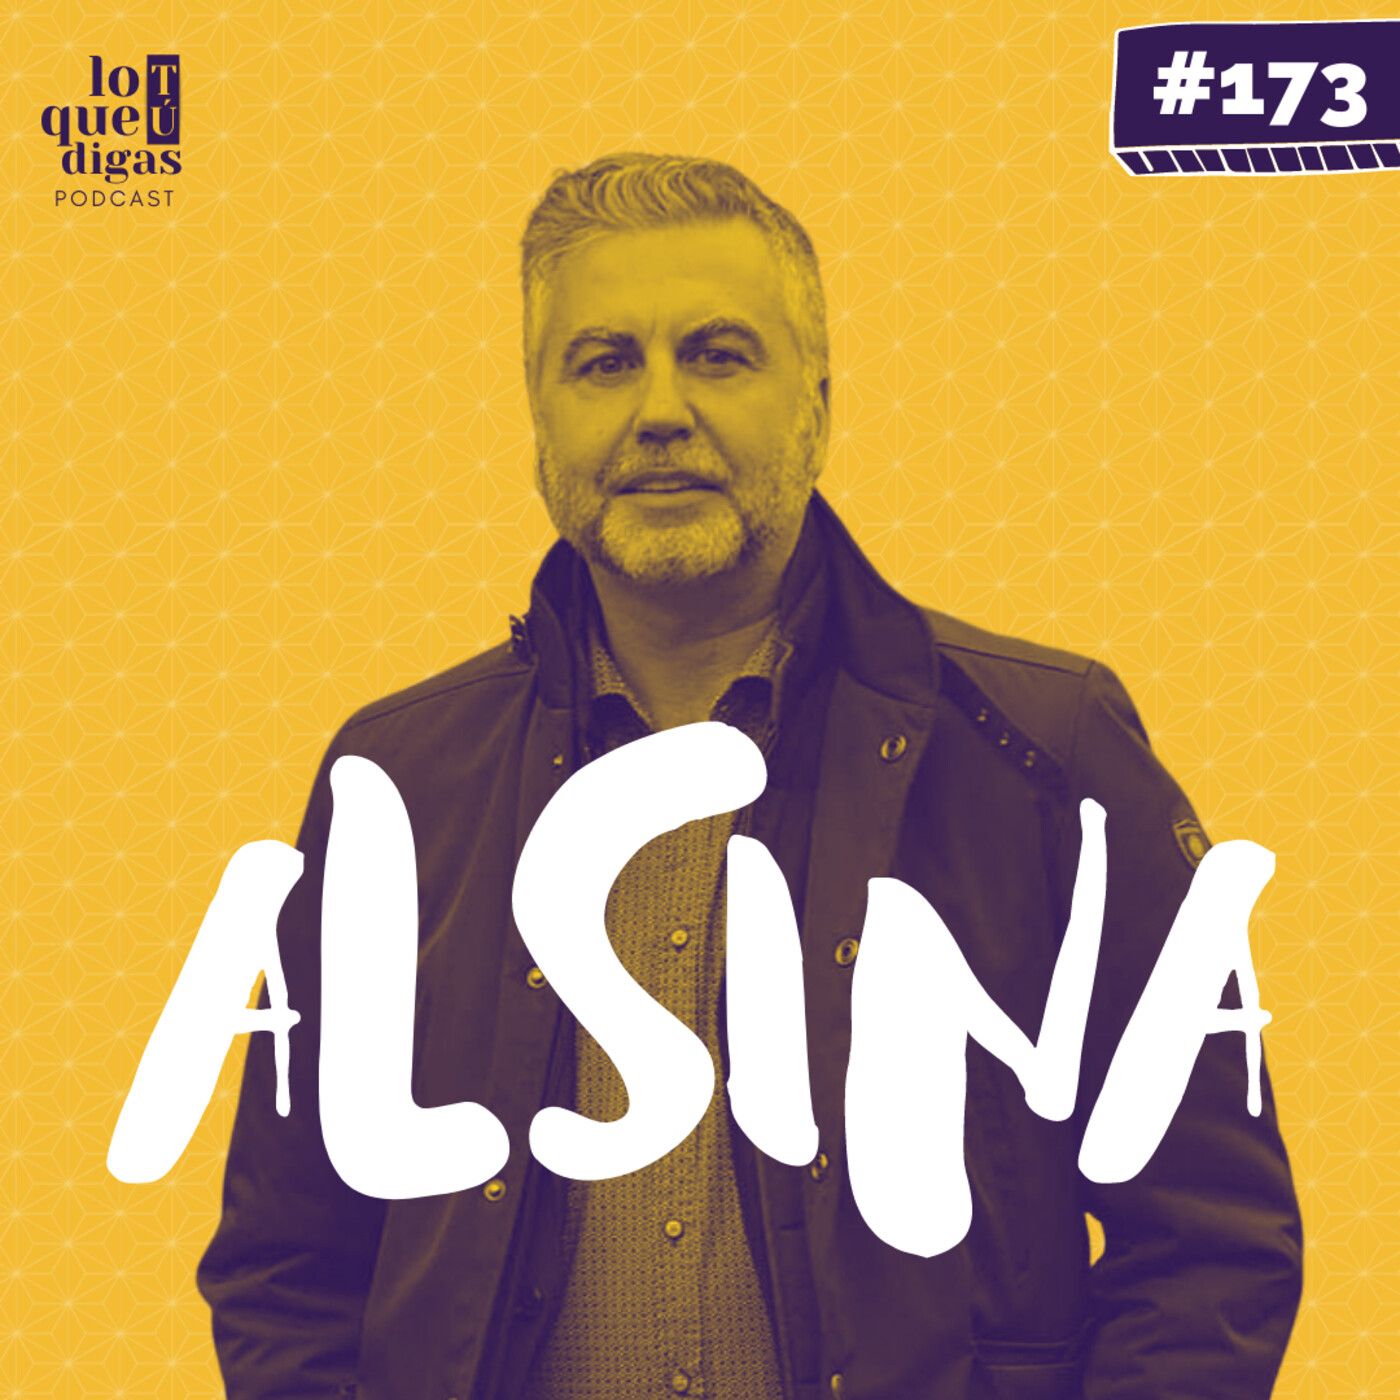 #173: Carlos Alsina - El capo de la radio